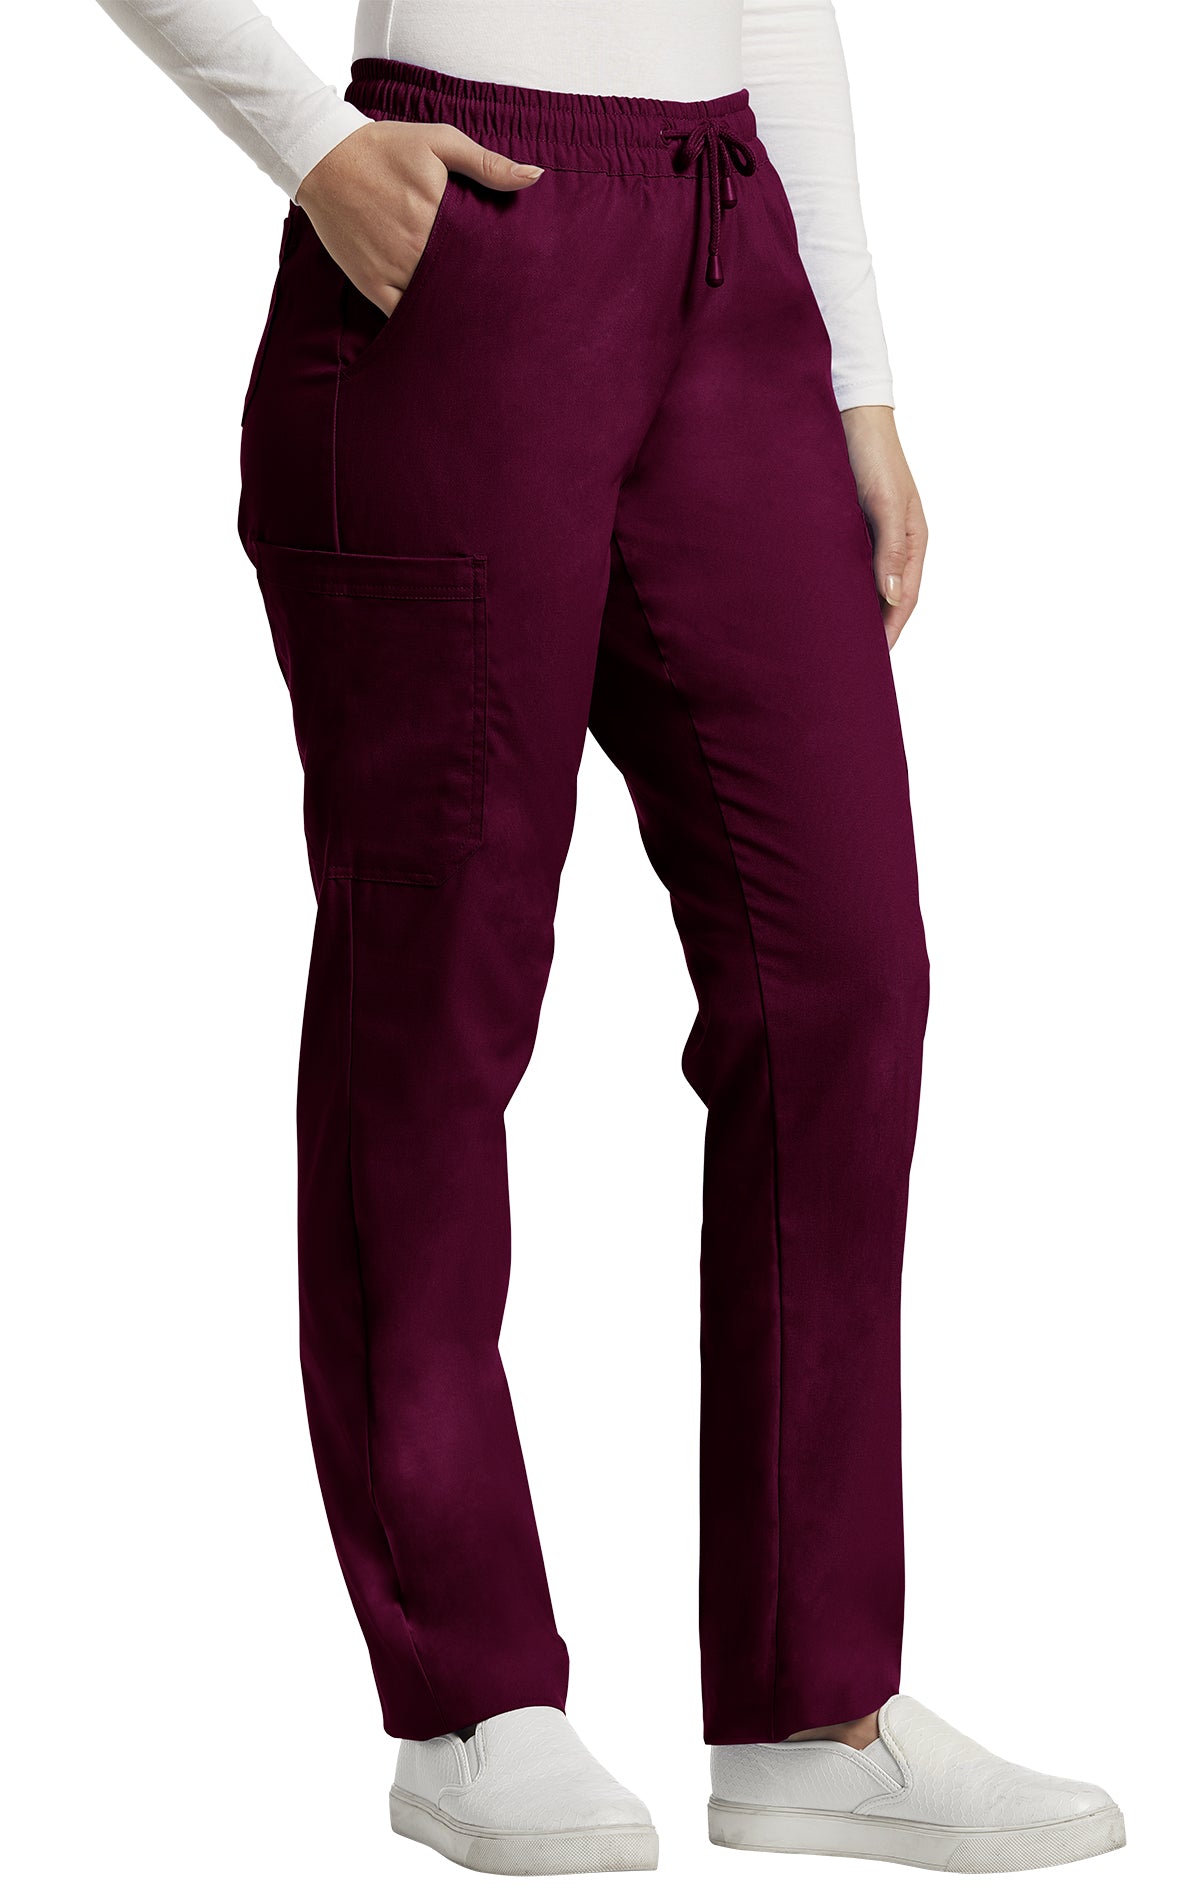 Pantalon médical 6 poches couleur bordeaux de White cross 304